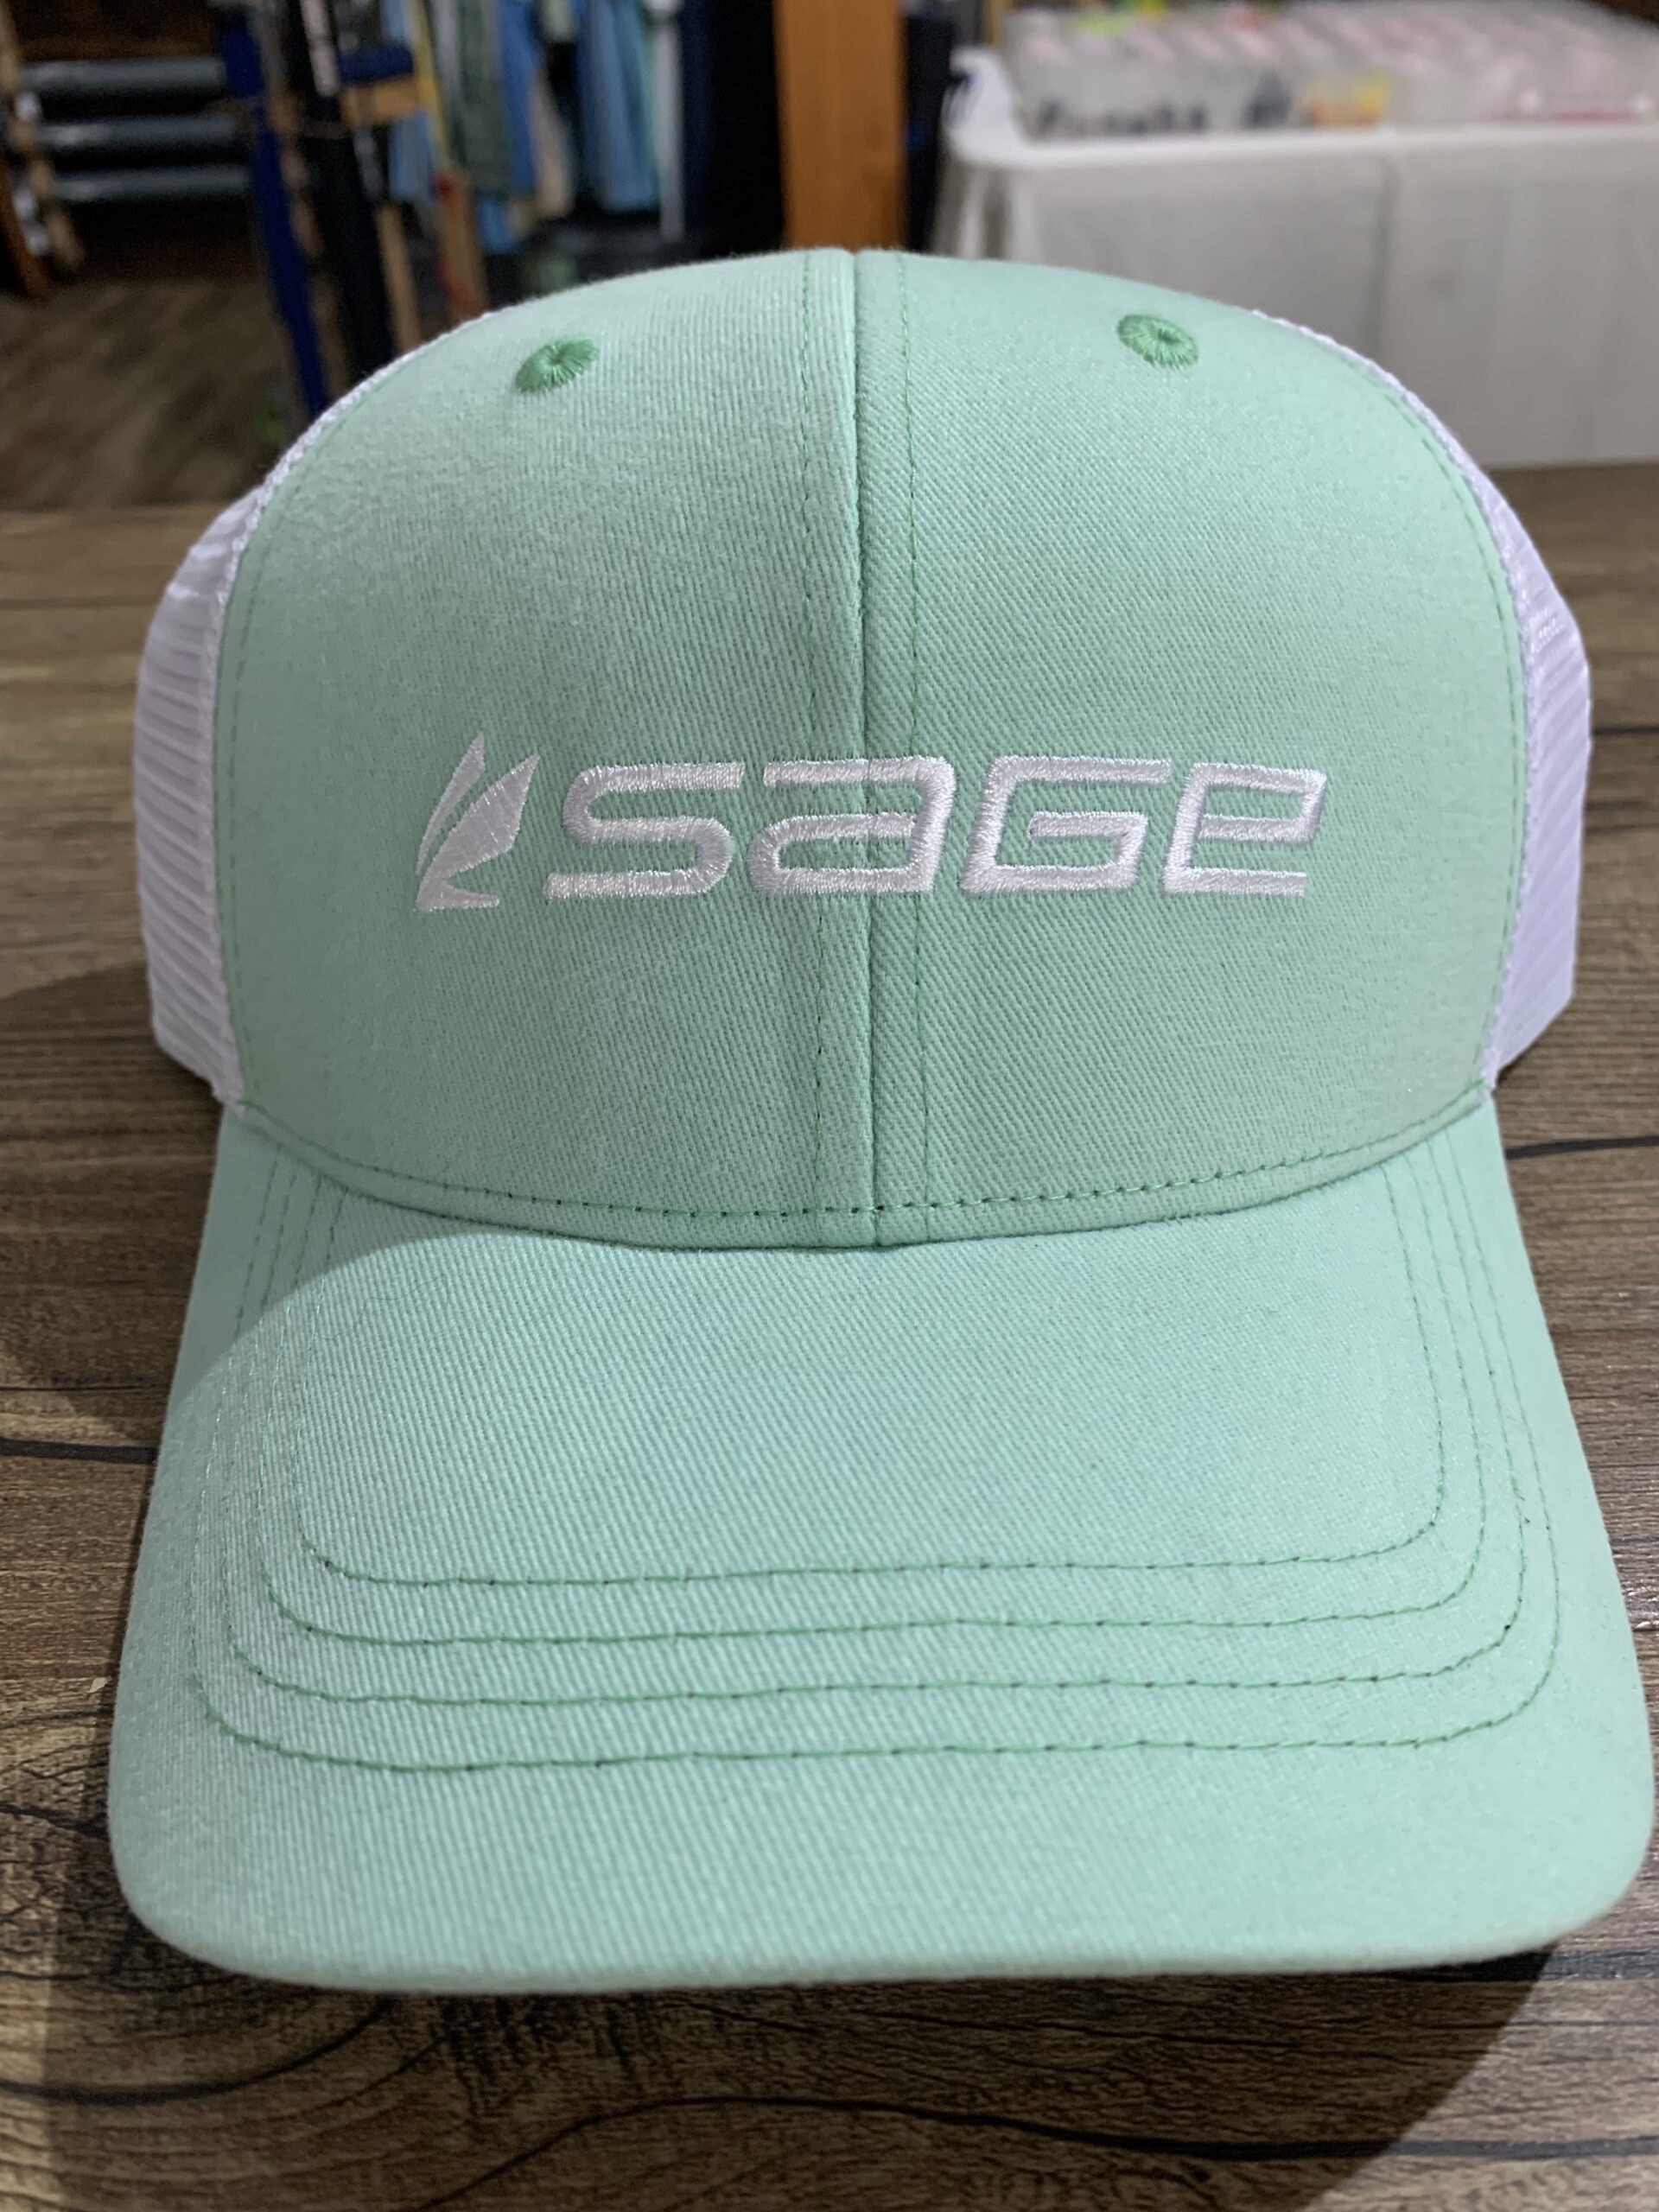 Sage Cap - Tie N Fly